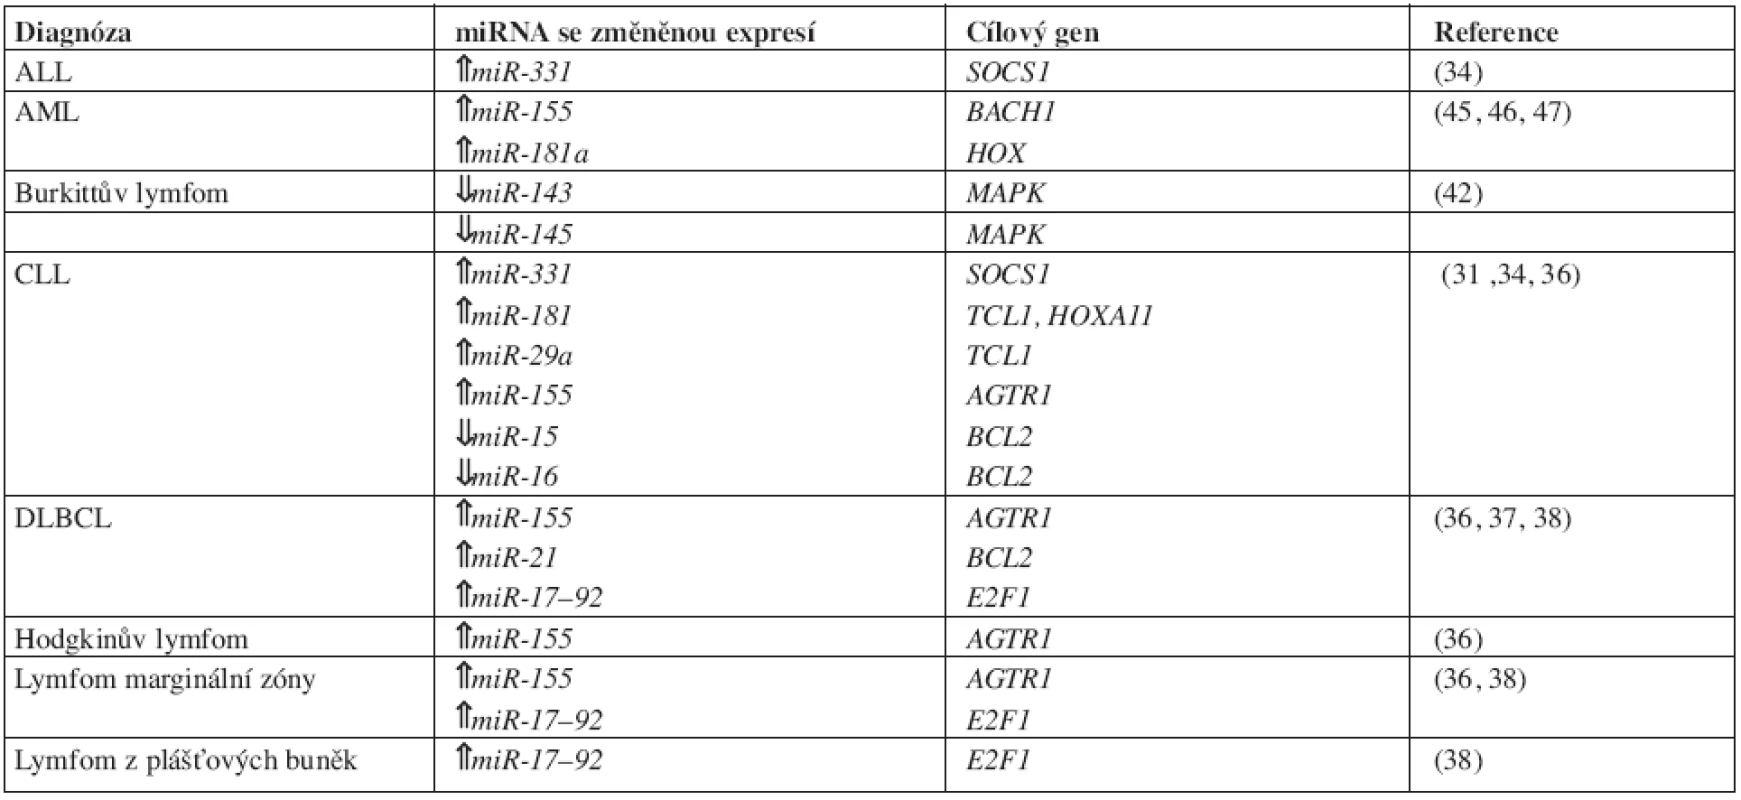 MicroRNA se změněnou expresí ve srovnání se zdravými kontrolami u vybraných hematoonkologických diagnóz.